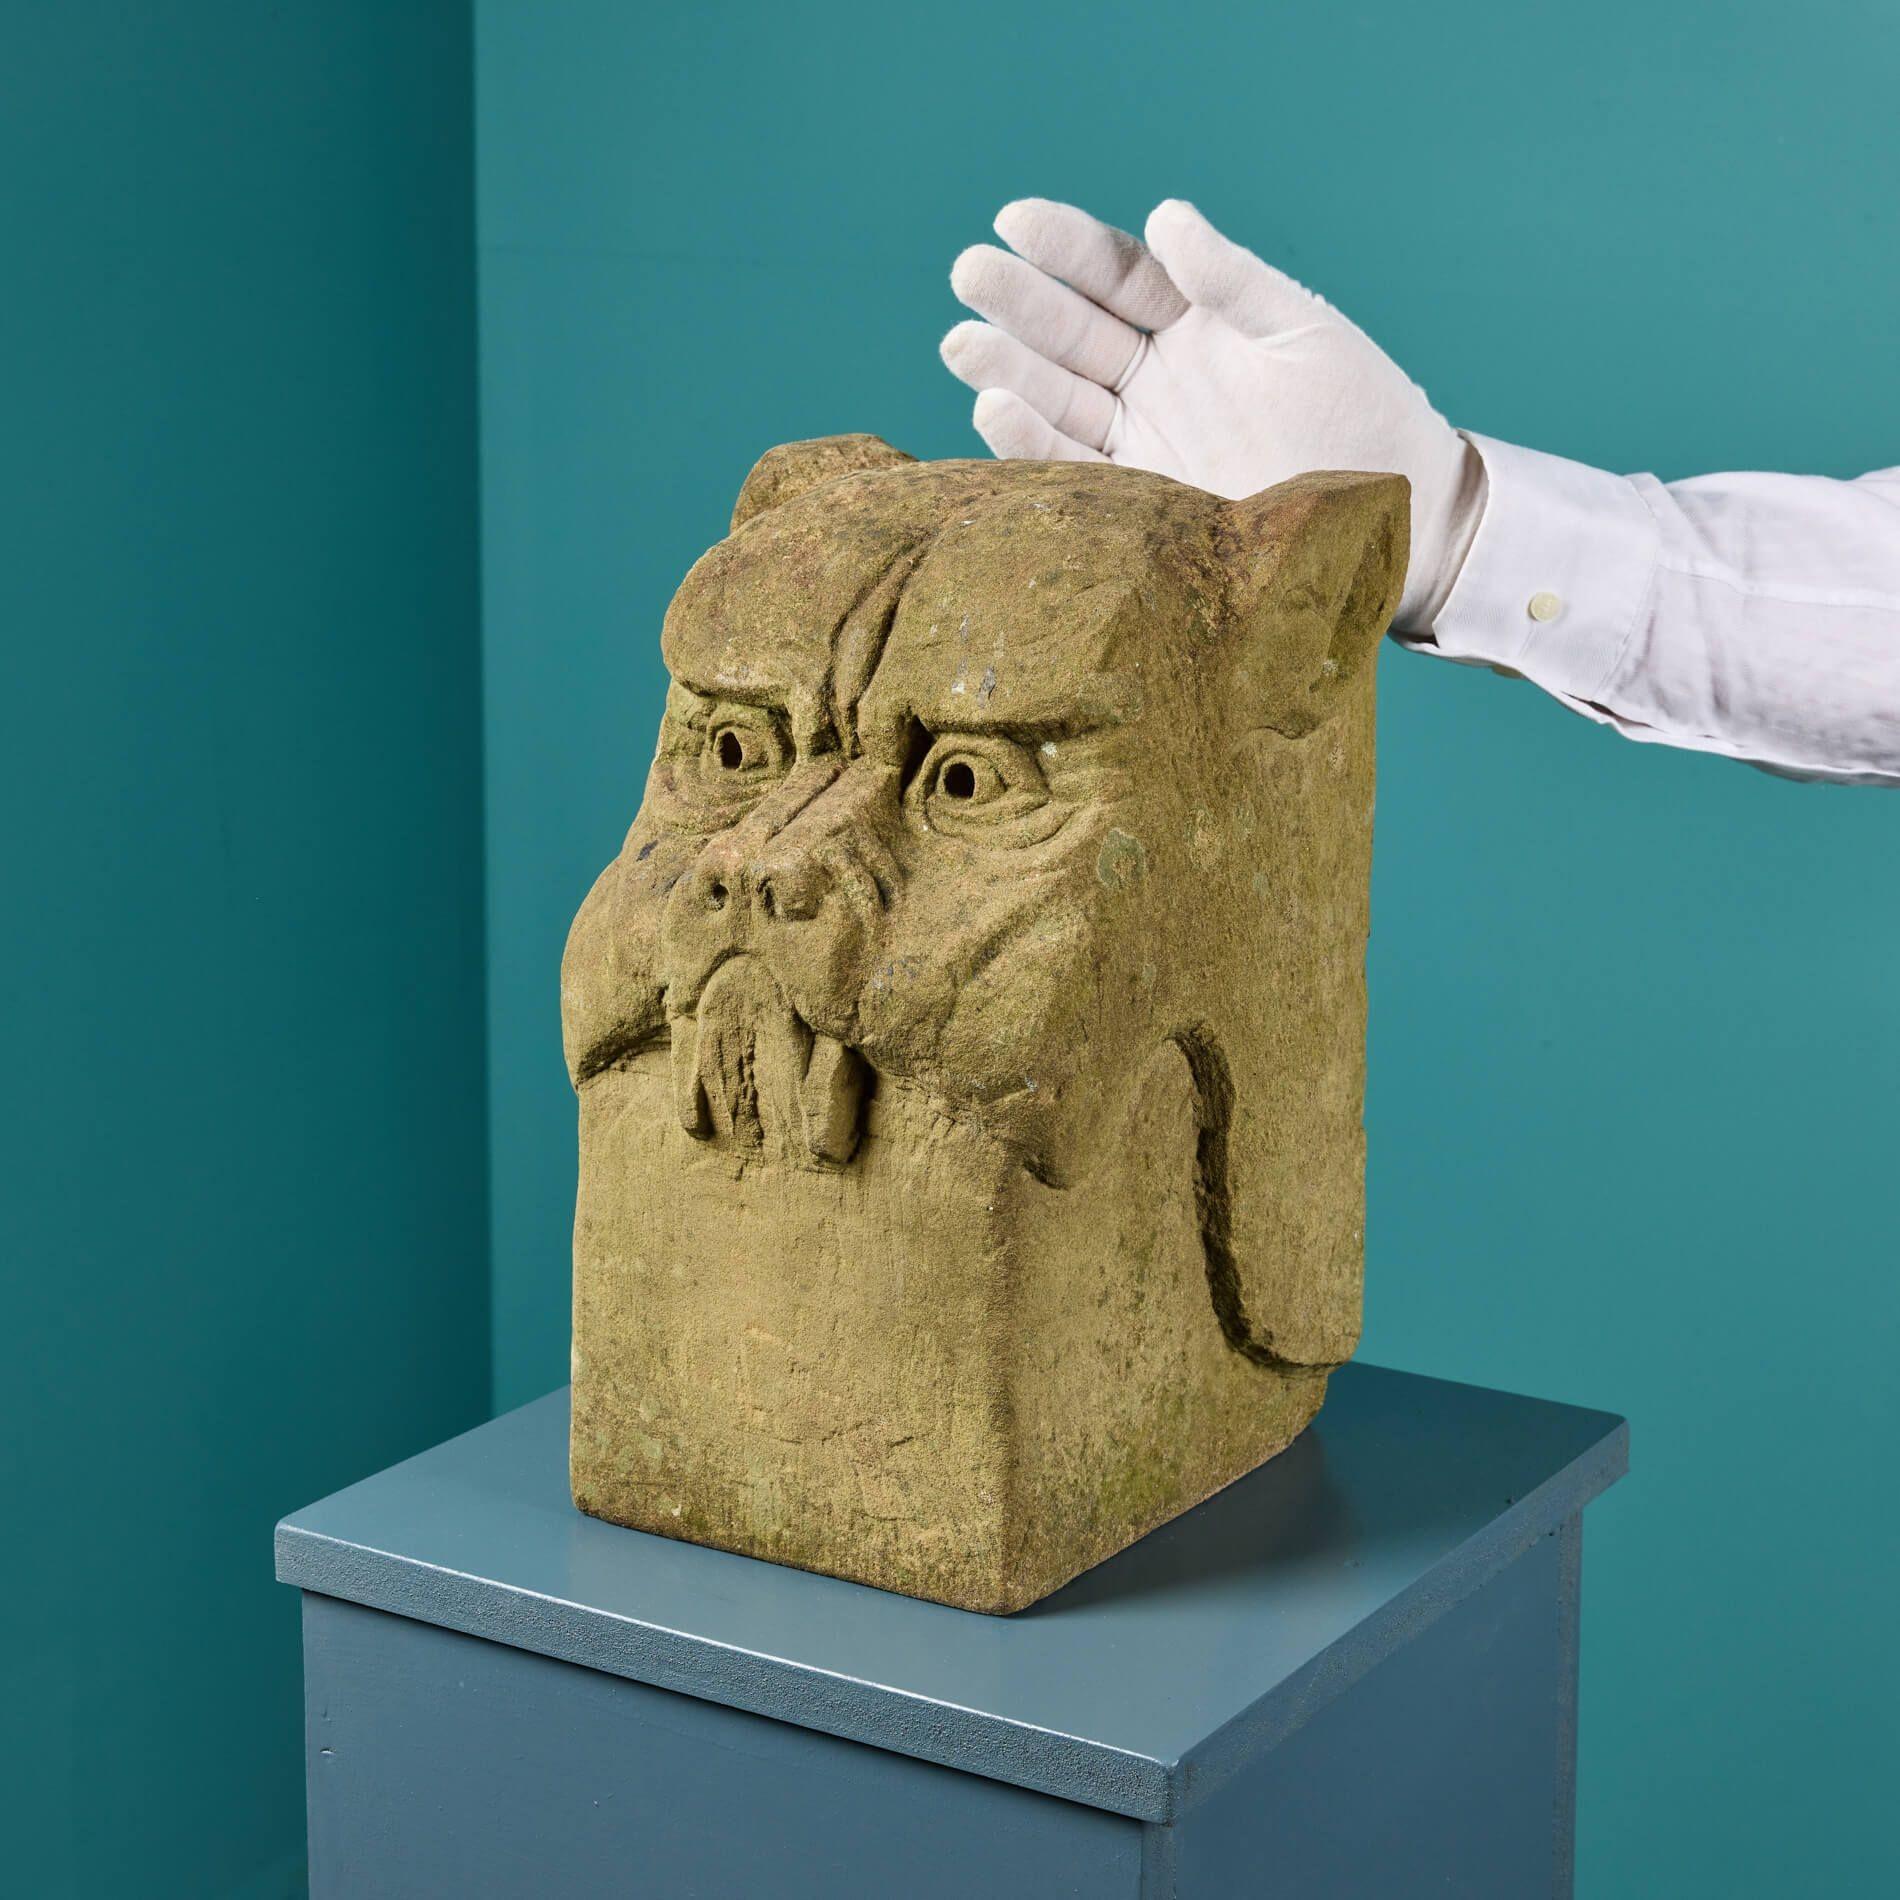 Une statue de chien gargouille stylisée, sculptée de manière expressive dans la pierre de York. Datant de la fin du XIXe siècle ou du début du XXe siècle, cette tête de chien a plus de 120 ans et présente donc une surface naturellement altérée par